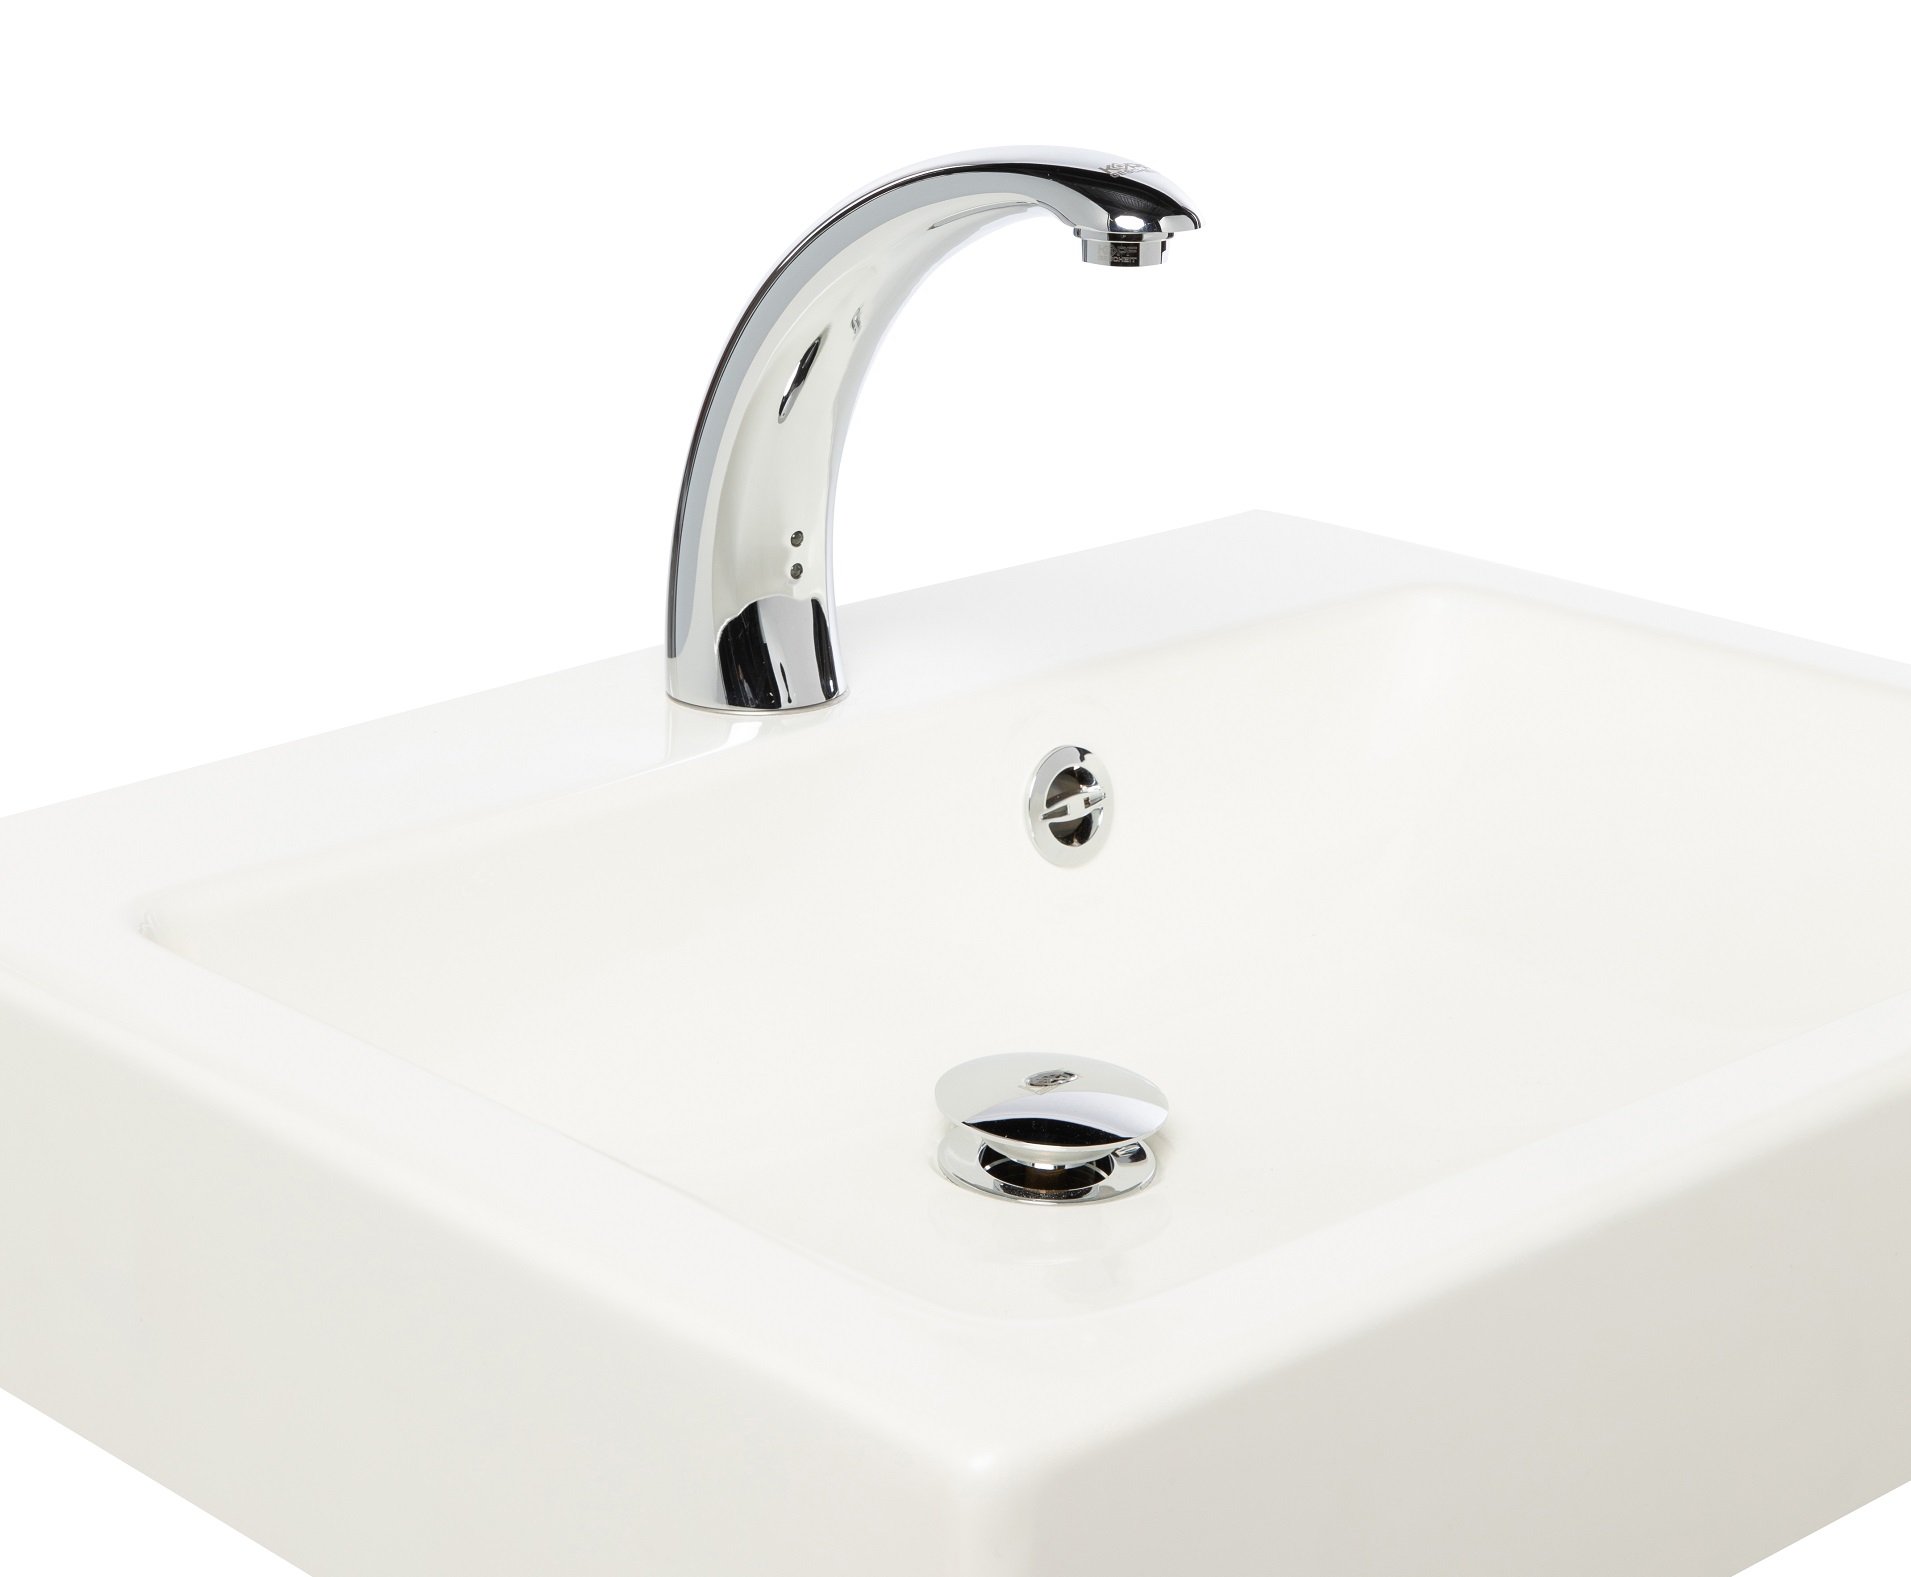 Automatic faucet KR5151V-DC